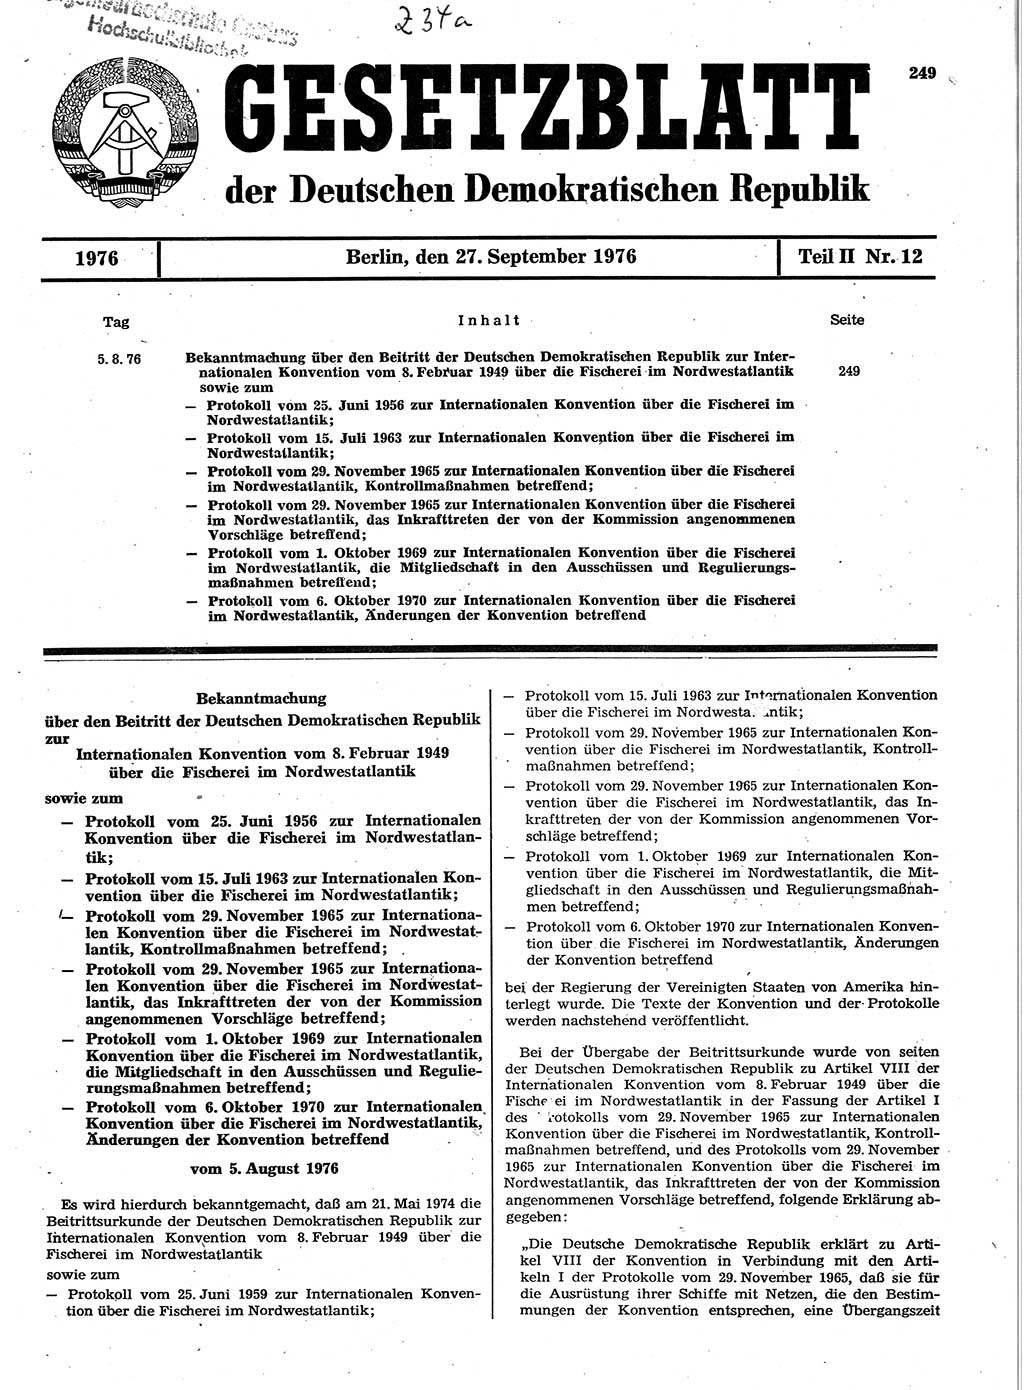 Gesetzblatt (GBl.) der Deutschen Demokratischen Republik (DDR) Teil ⅠⅠ 1976, Seite 249 (GBl. DDR ⅠⅠ 1976, S. 249)